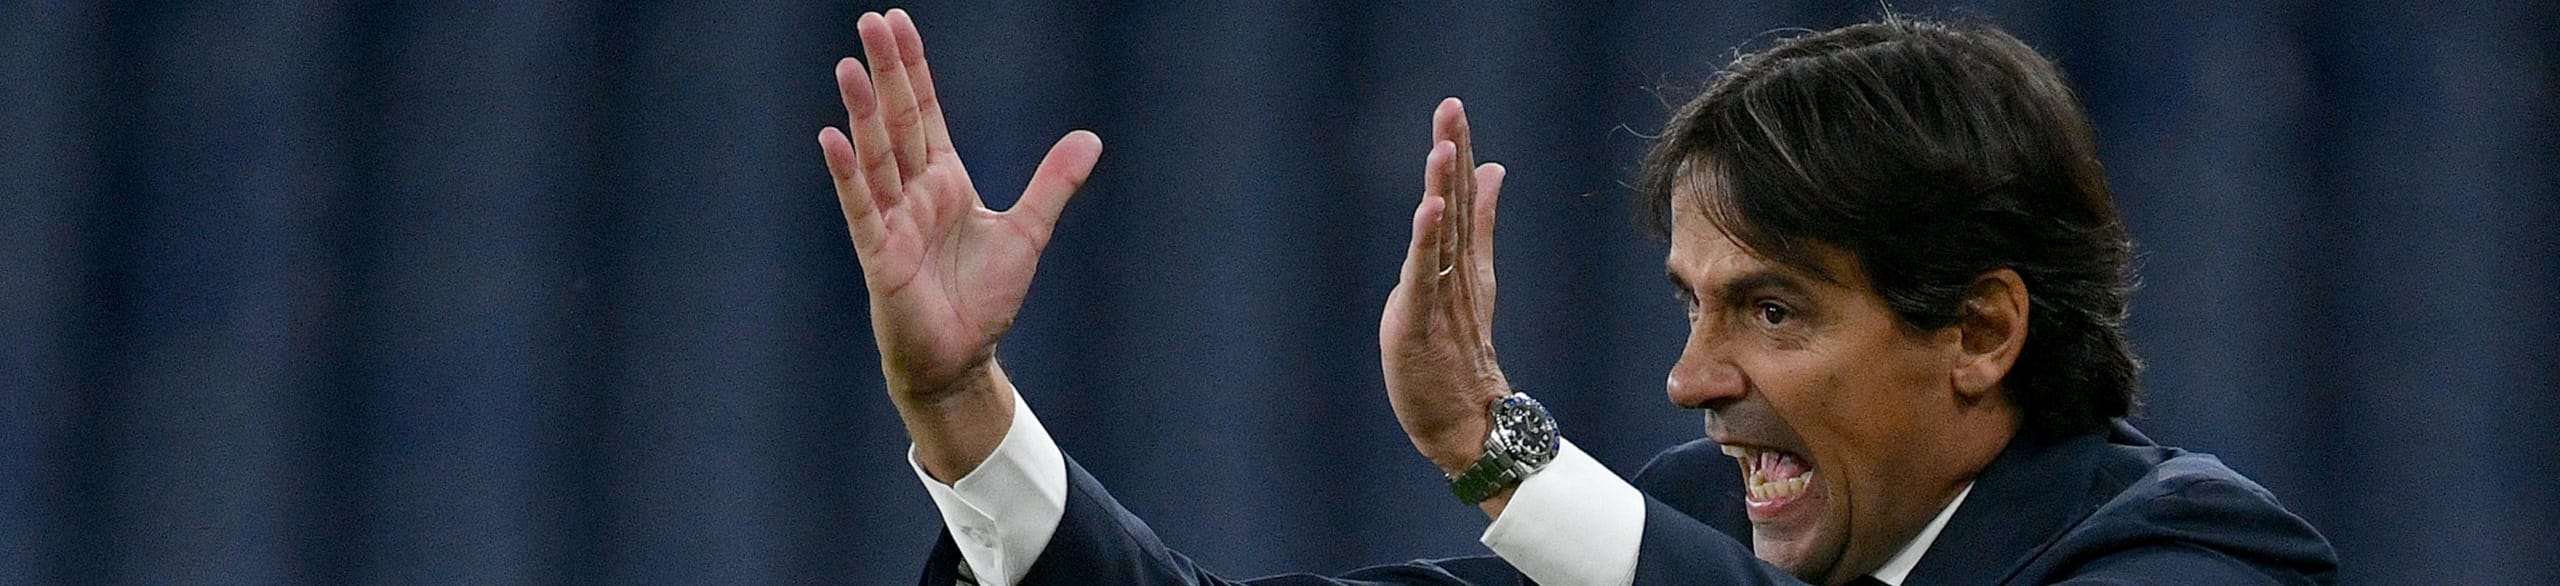 Pronostico Lazio-Borussia Dortmund: Inzaghi cerca la reazione in Champions – le ultimissime